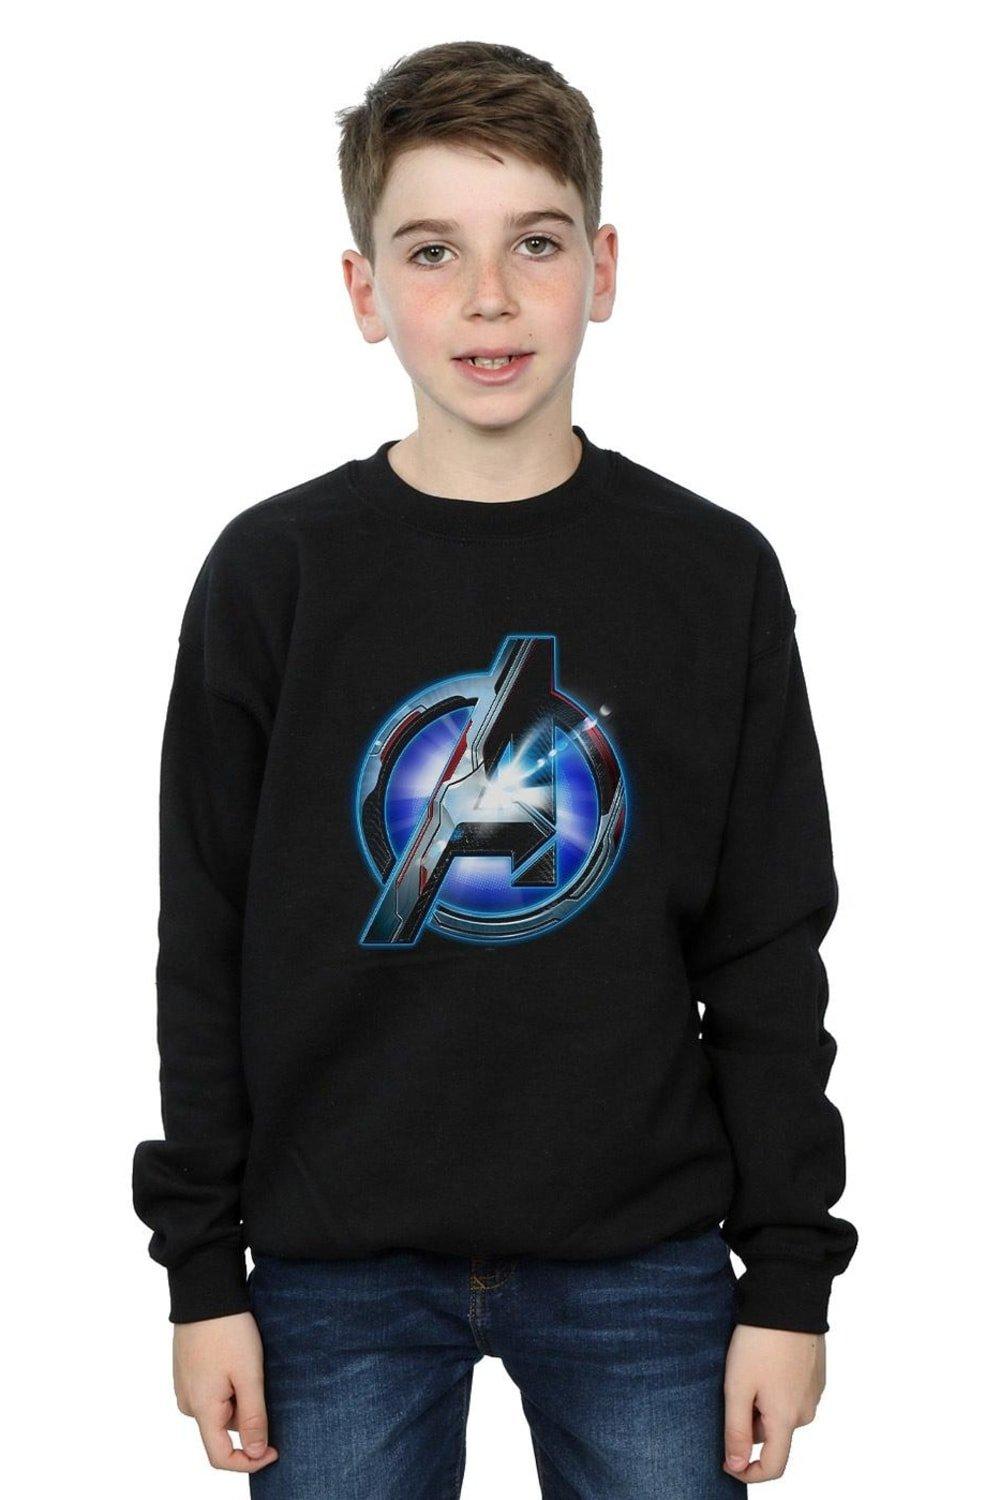 Avengers Endgame Glowing Logo Sweatshirt